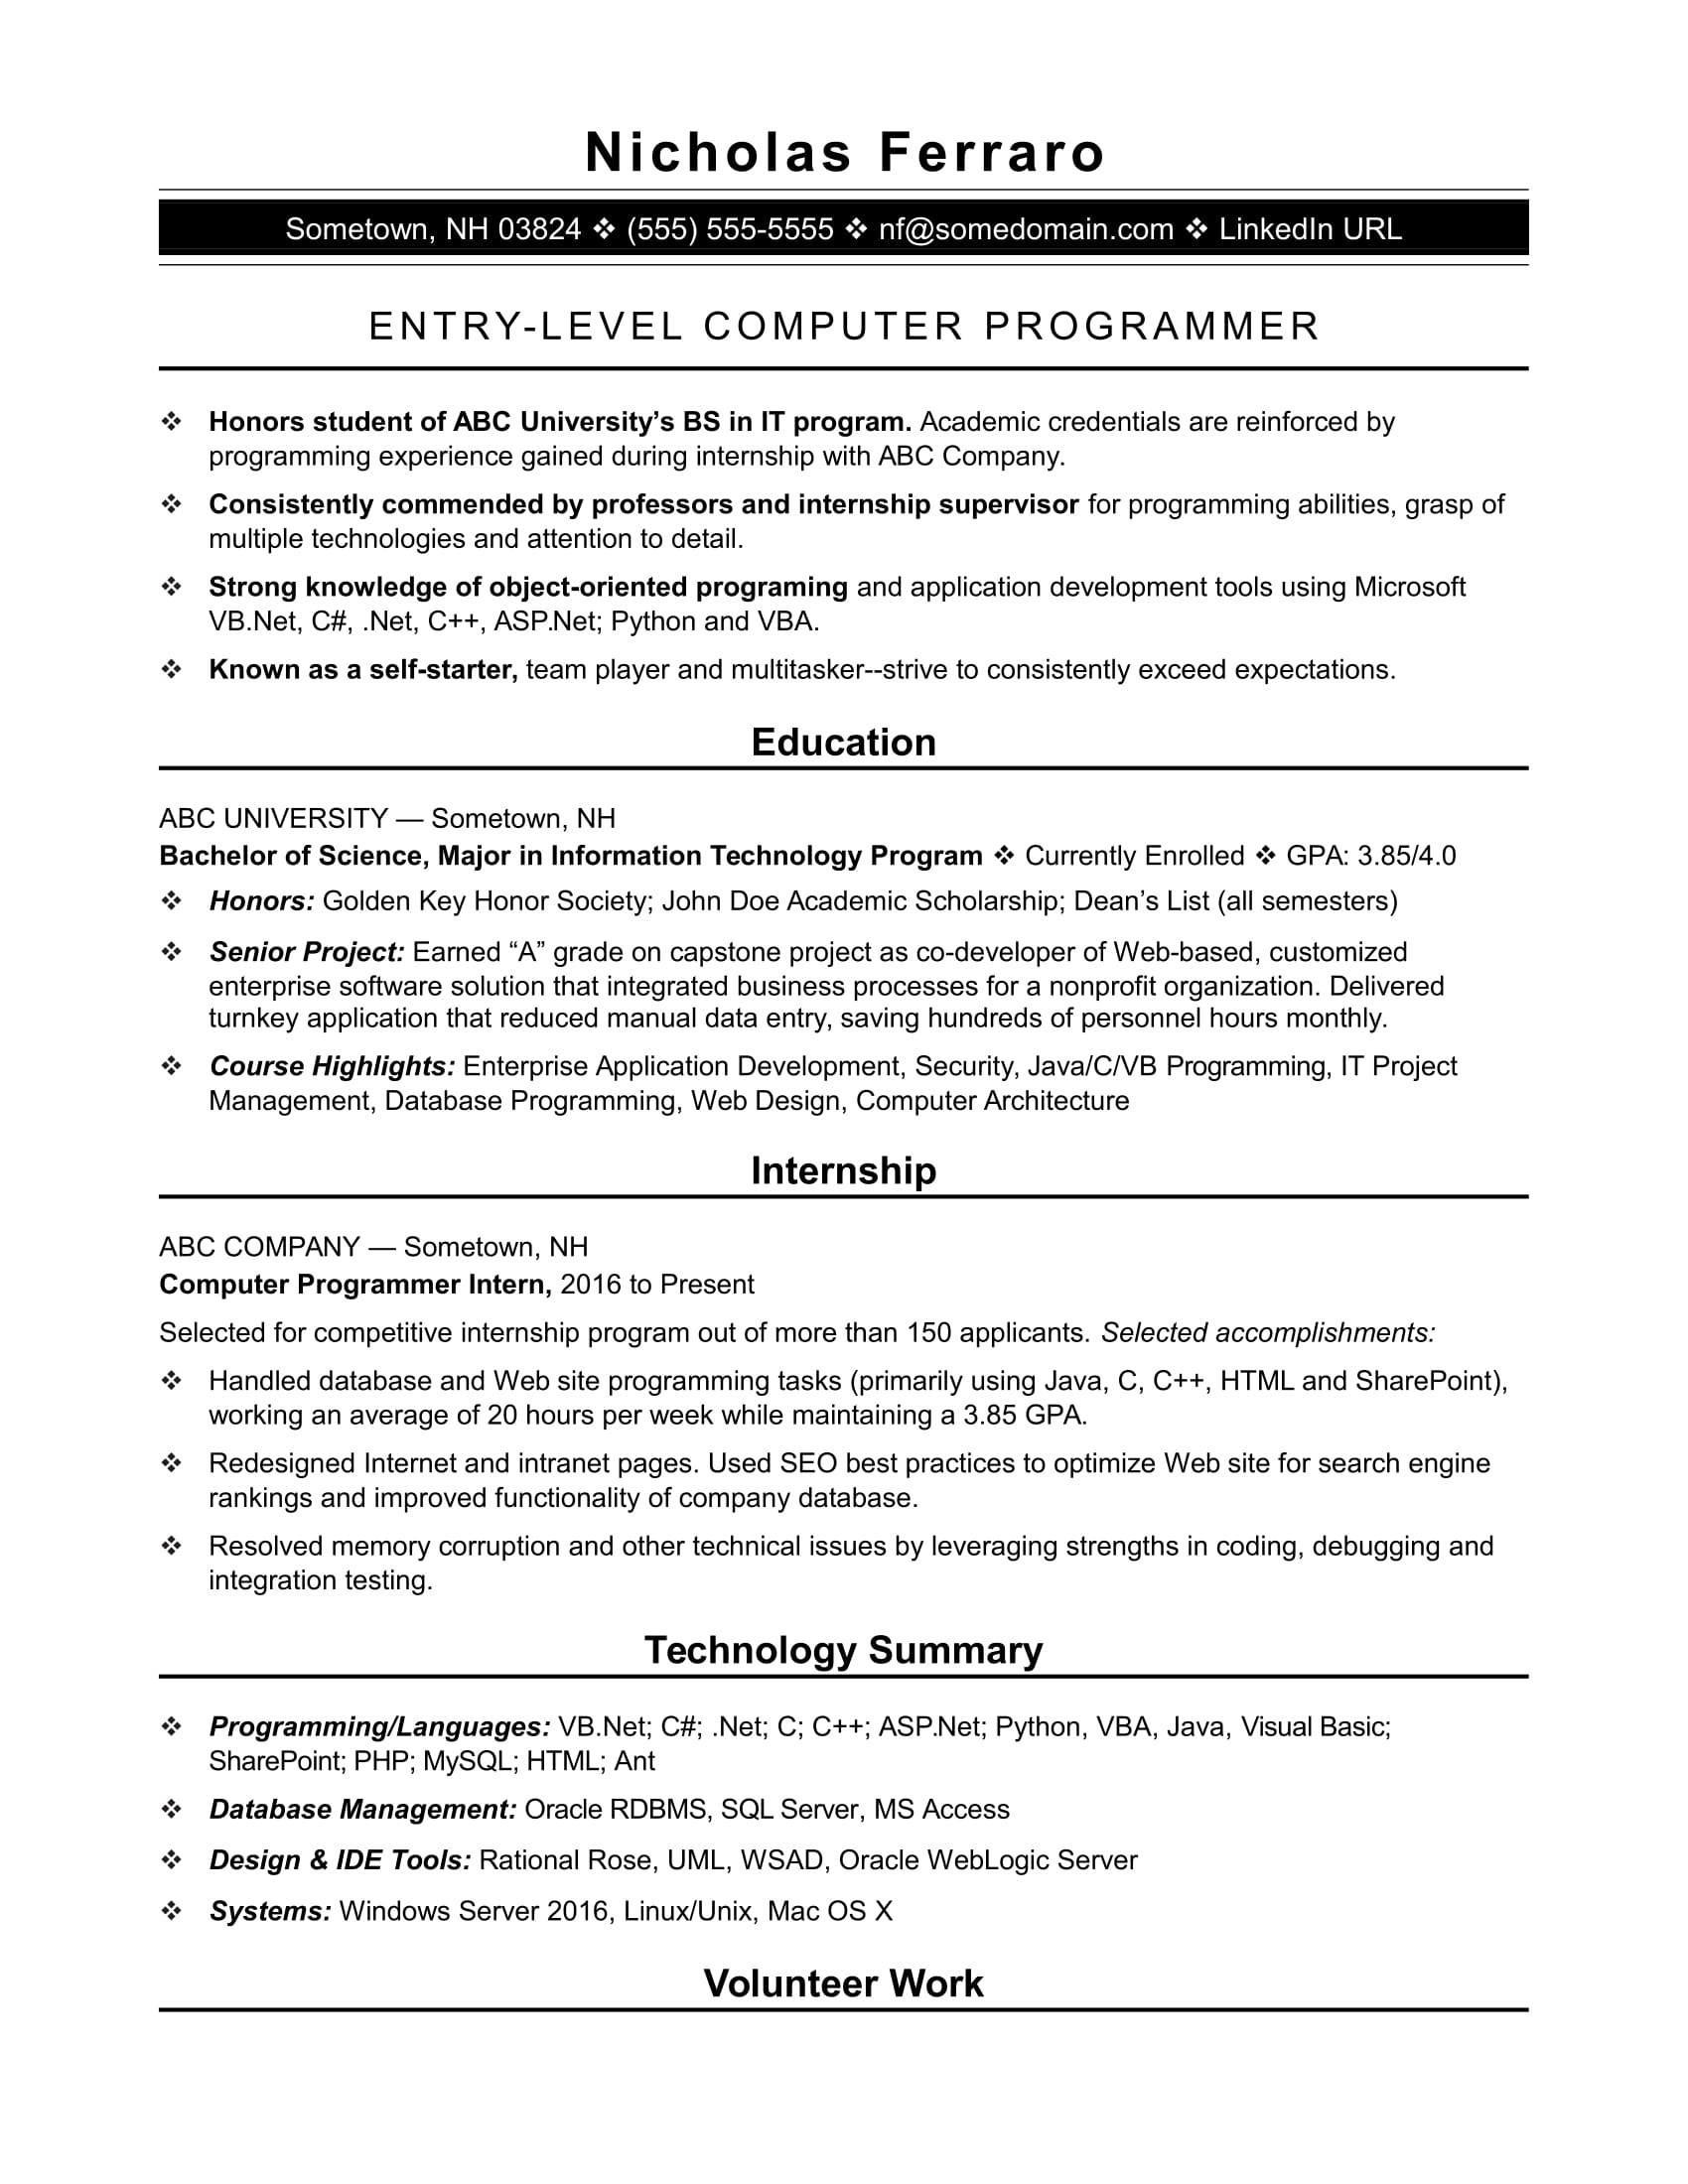 sample resume puter programmer entry level